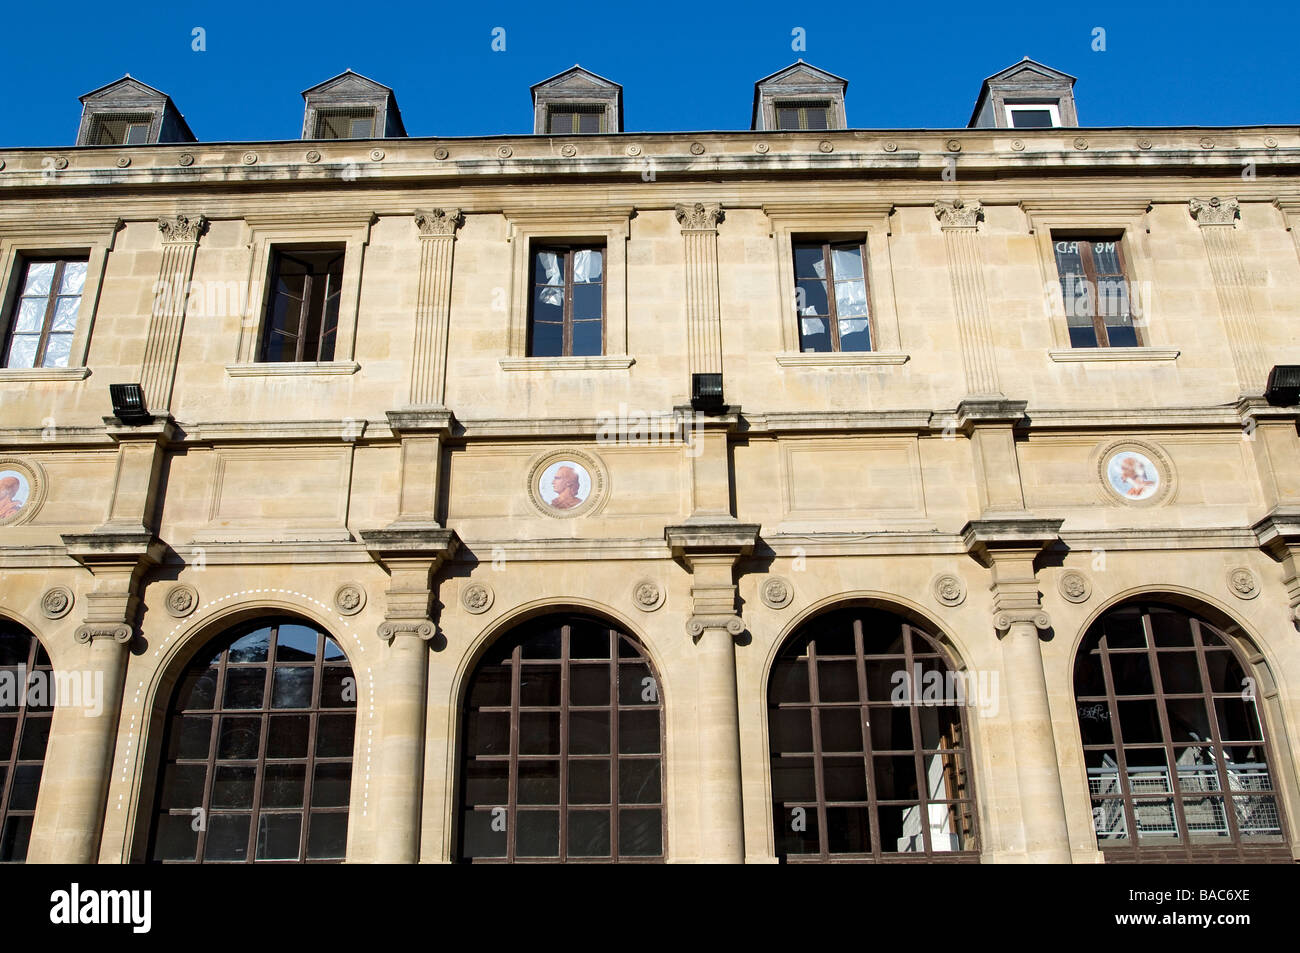 France, Paris, Saint Germain des Pres District, Ecole des Beaux Arts (Art School), Neo classical facade Stock Photo